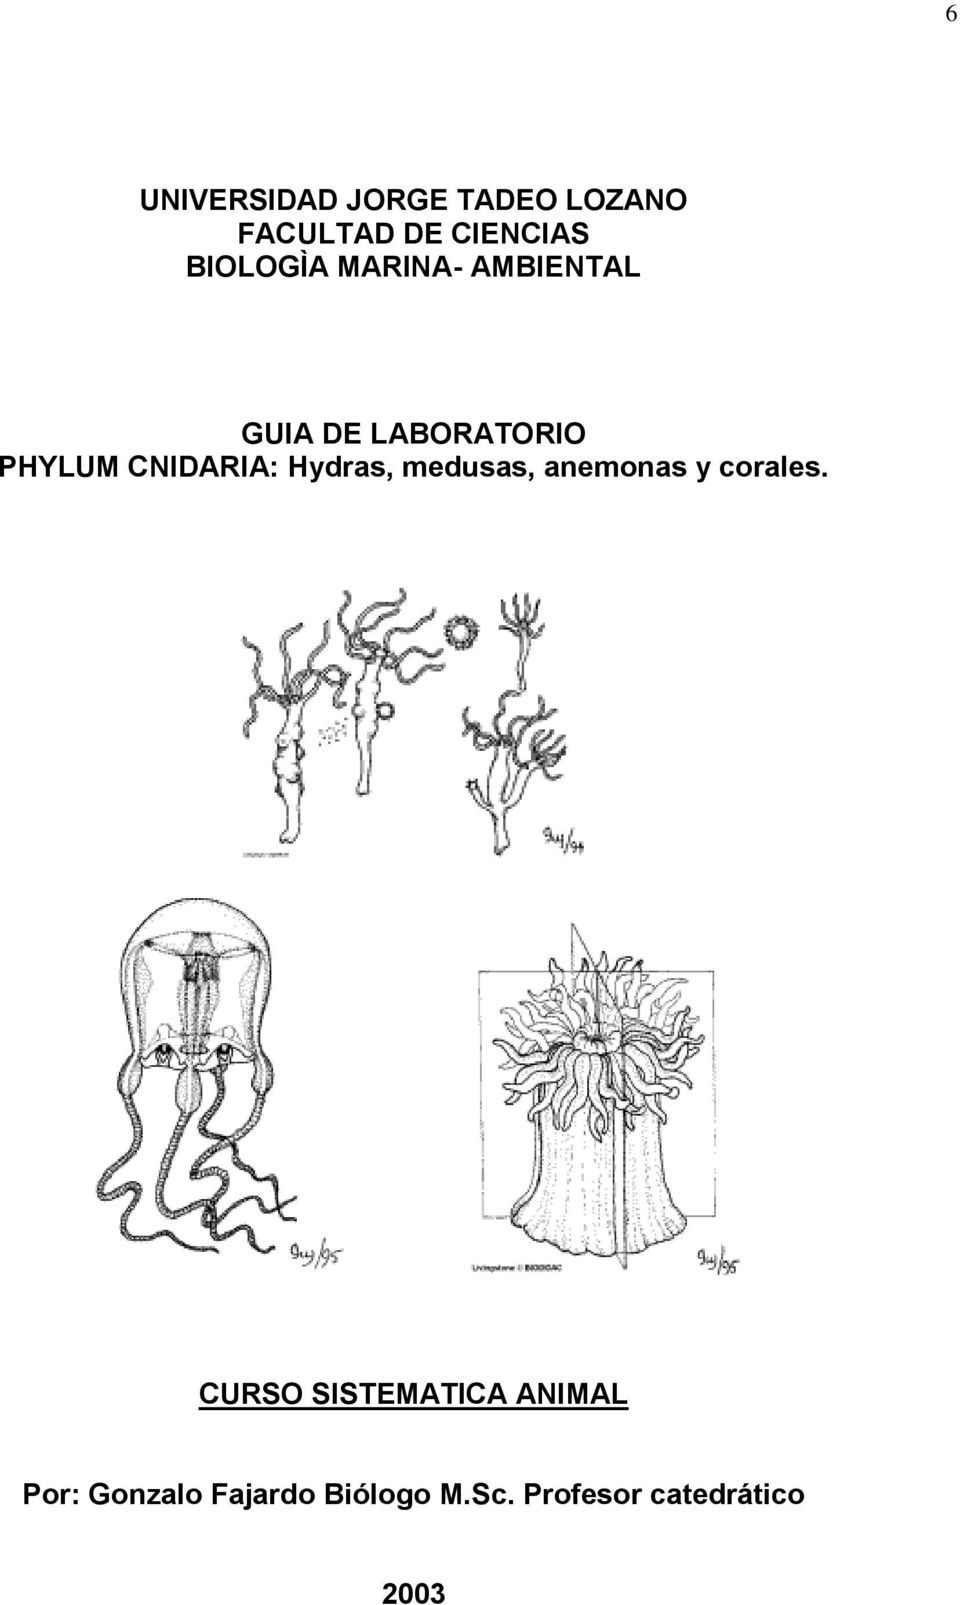 CNIDARIA: Hydras, medusas, anemonas y corales.